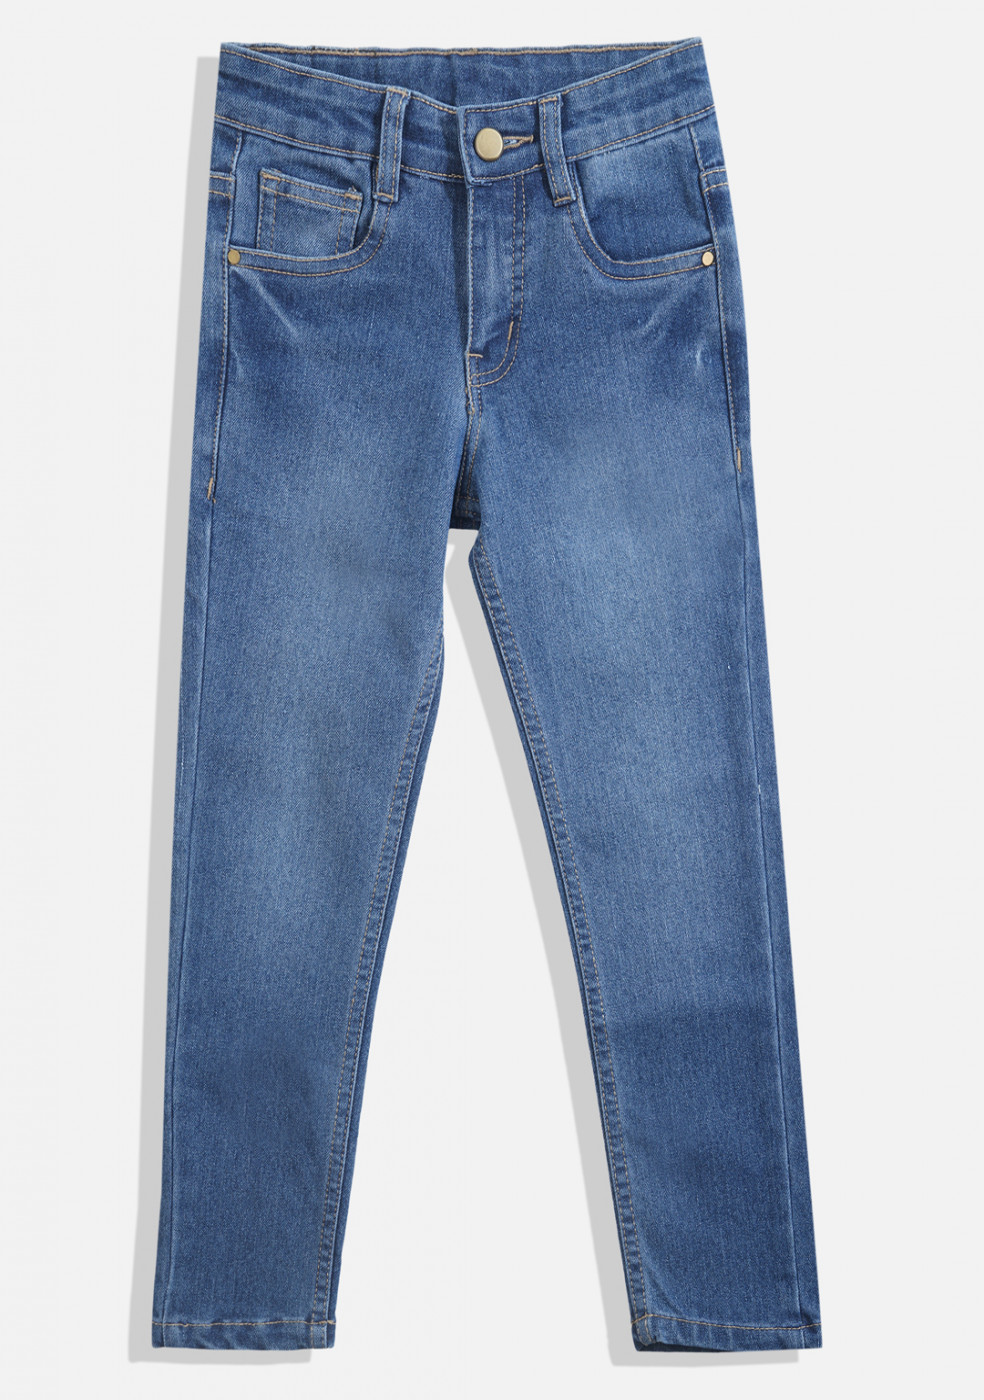 Blue Denim Jeans For Boys